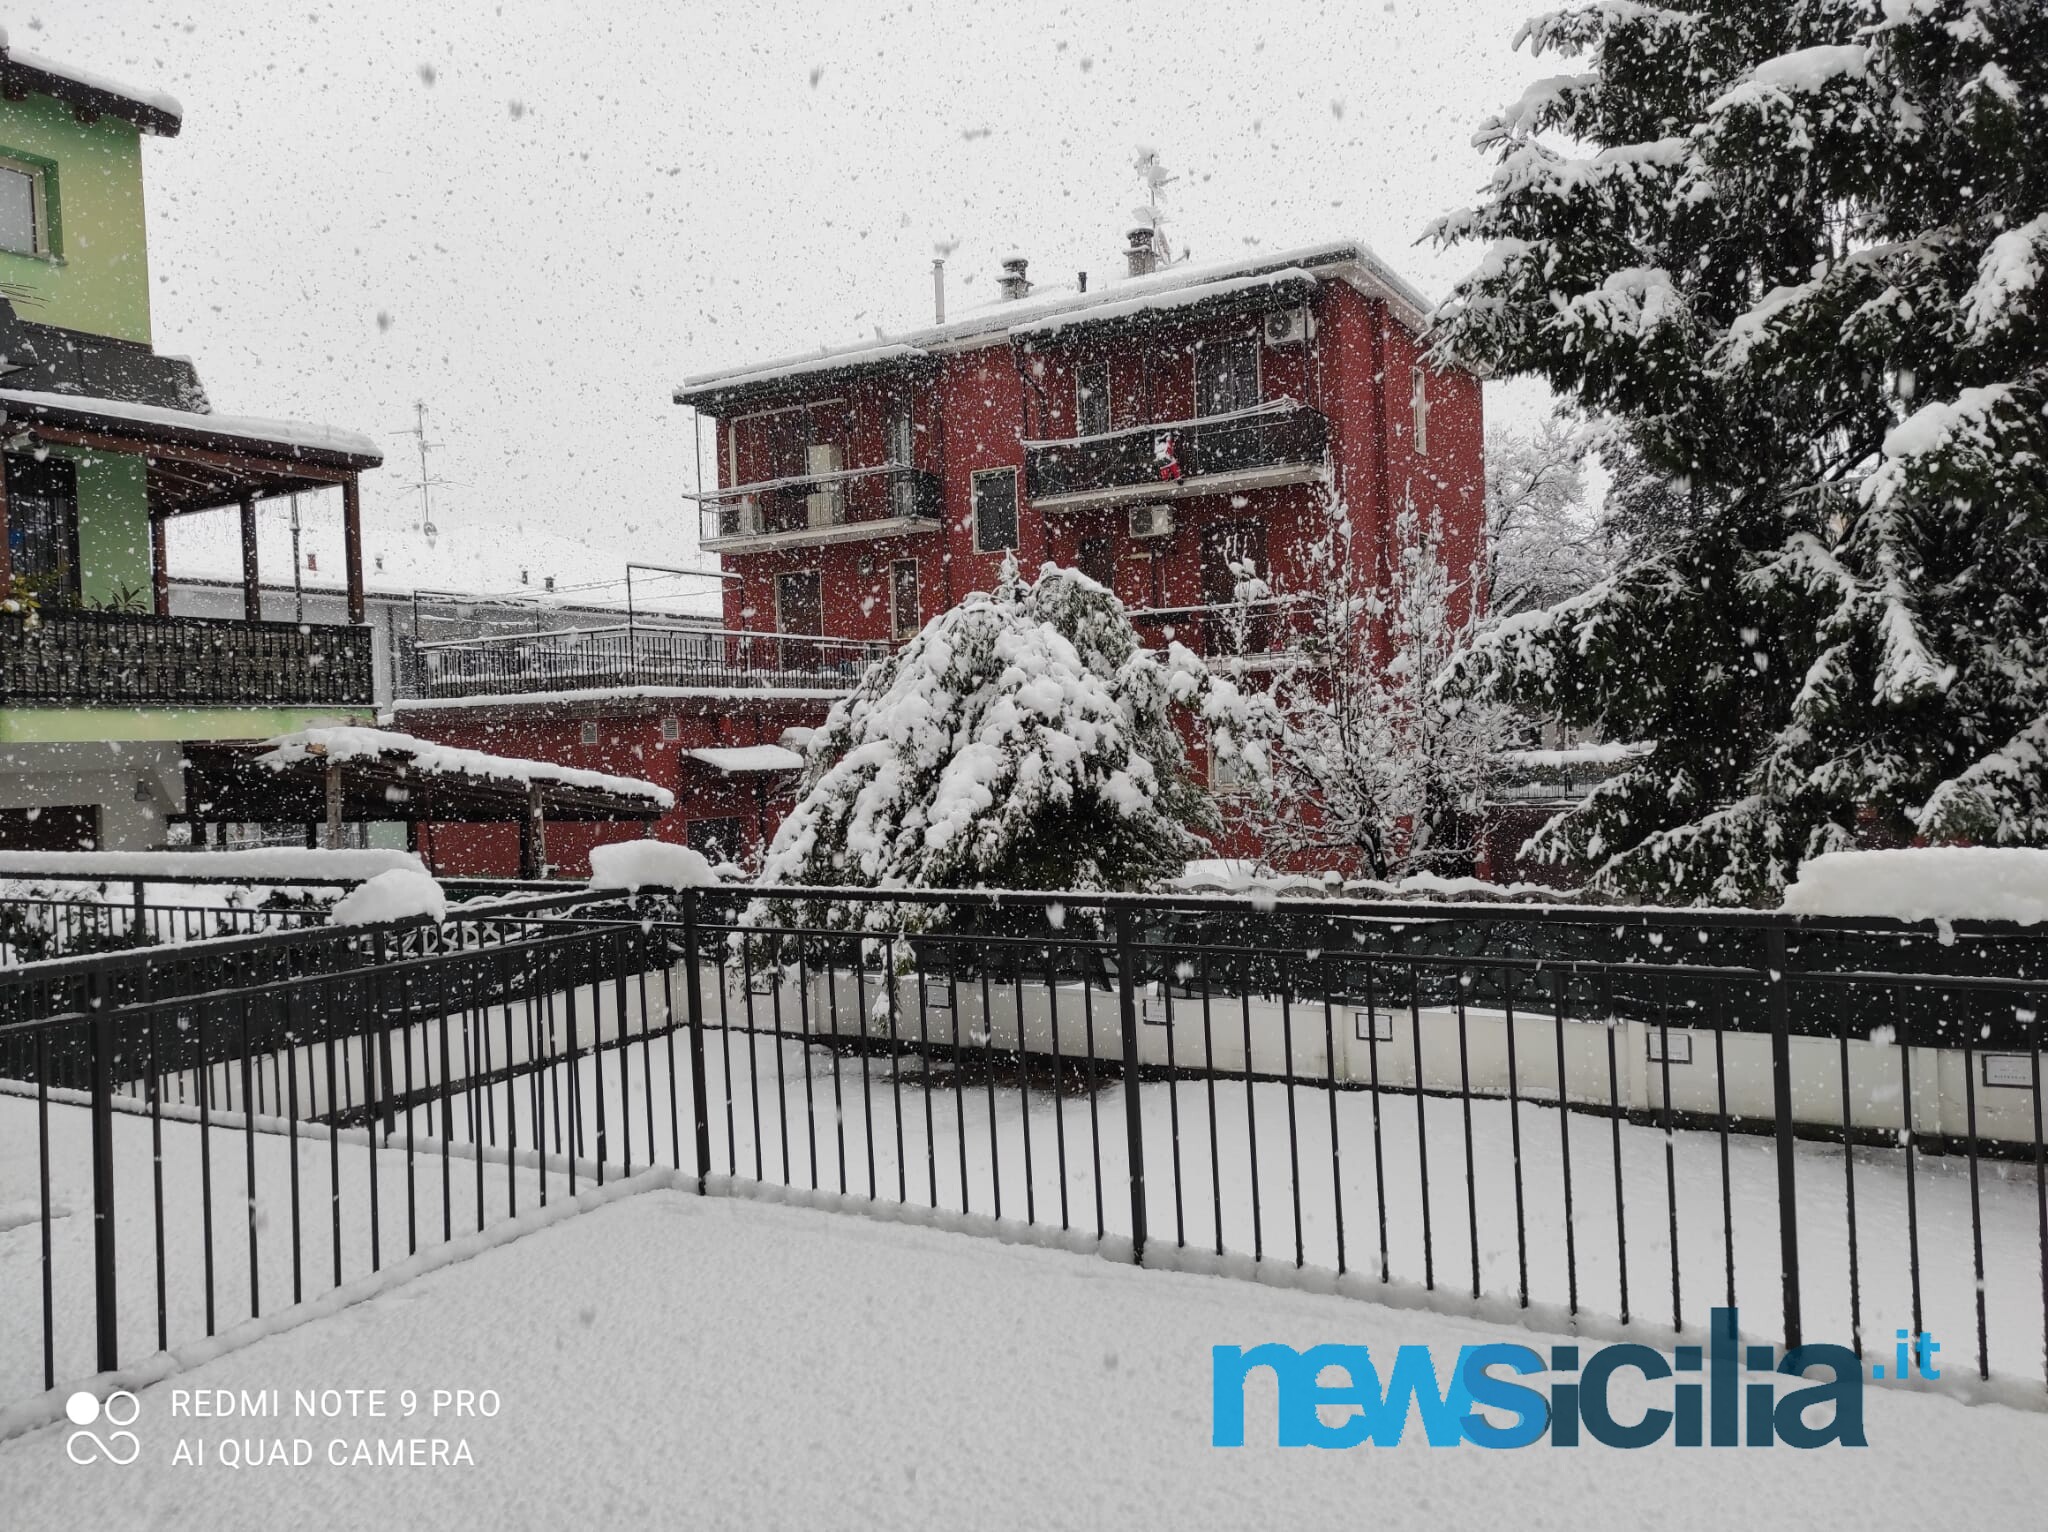 Maltempo a Milano e provincia, nevicata senza precedenti: alberi precipitati e disagi – Le FOTO e il VIDEO